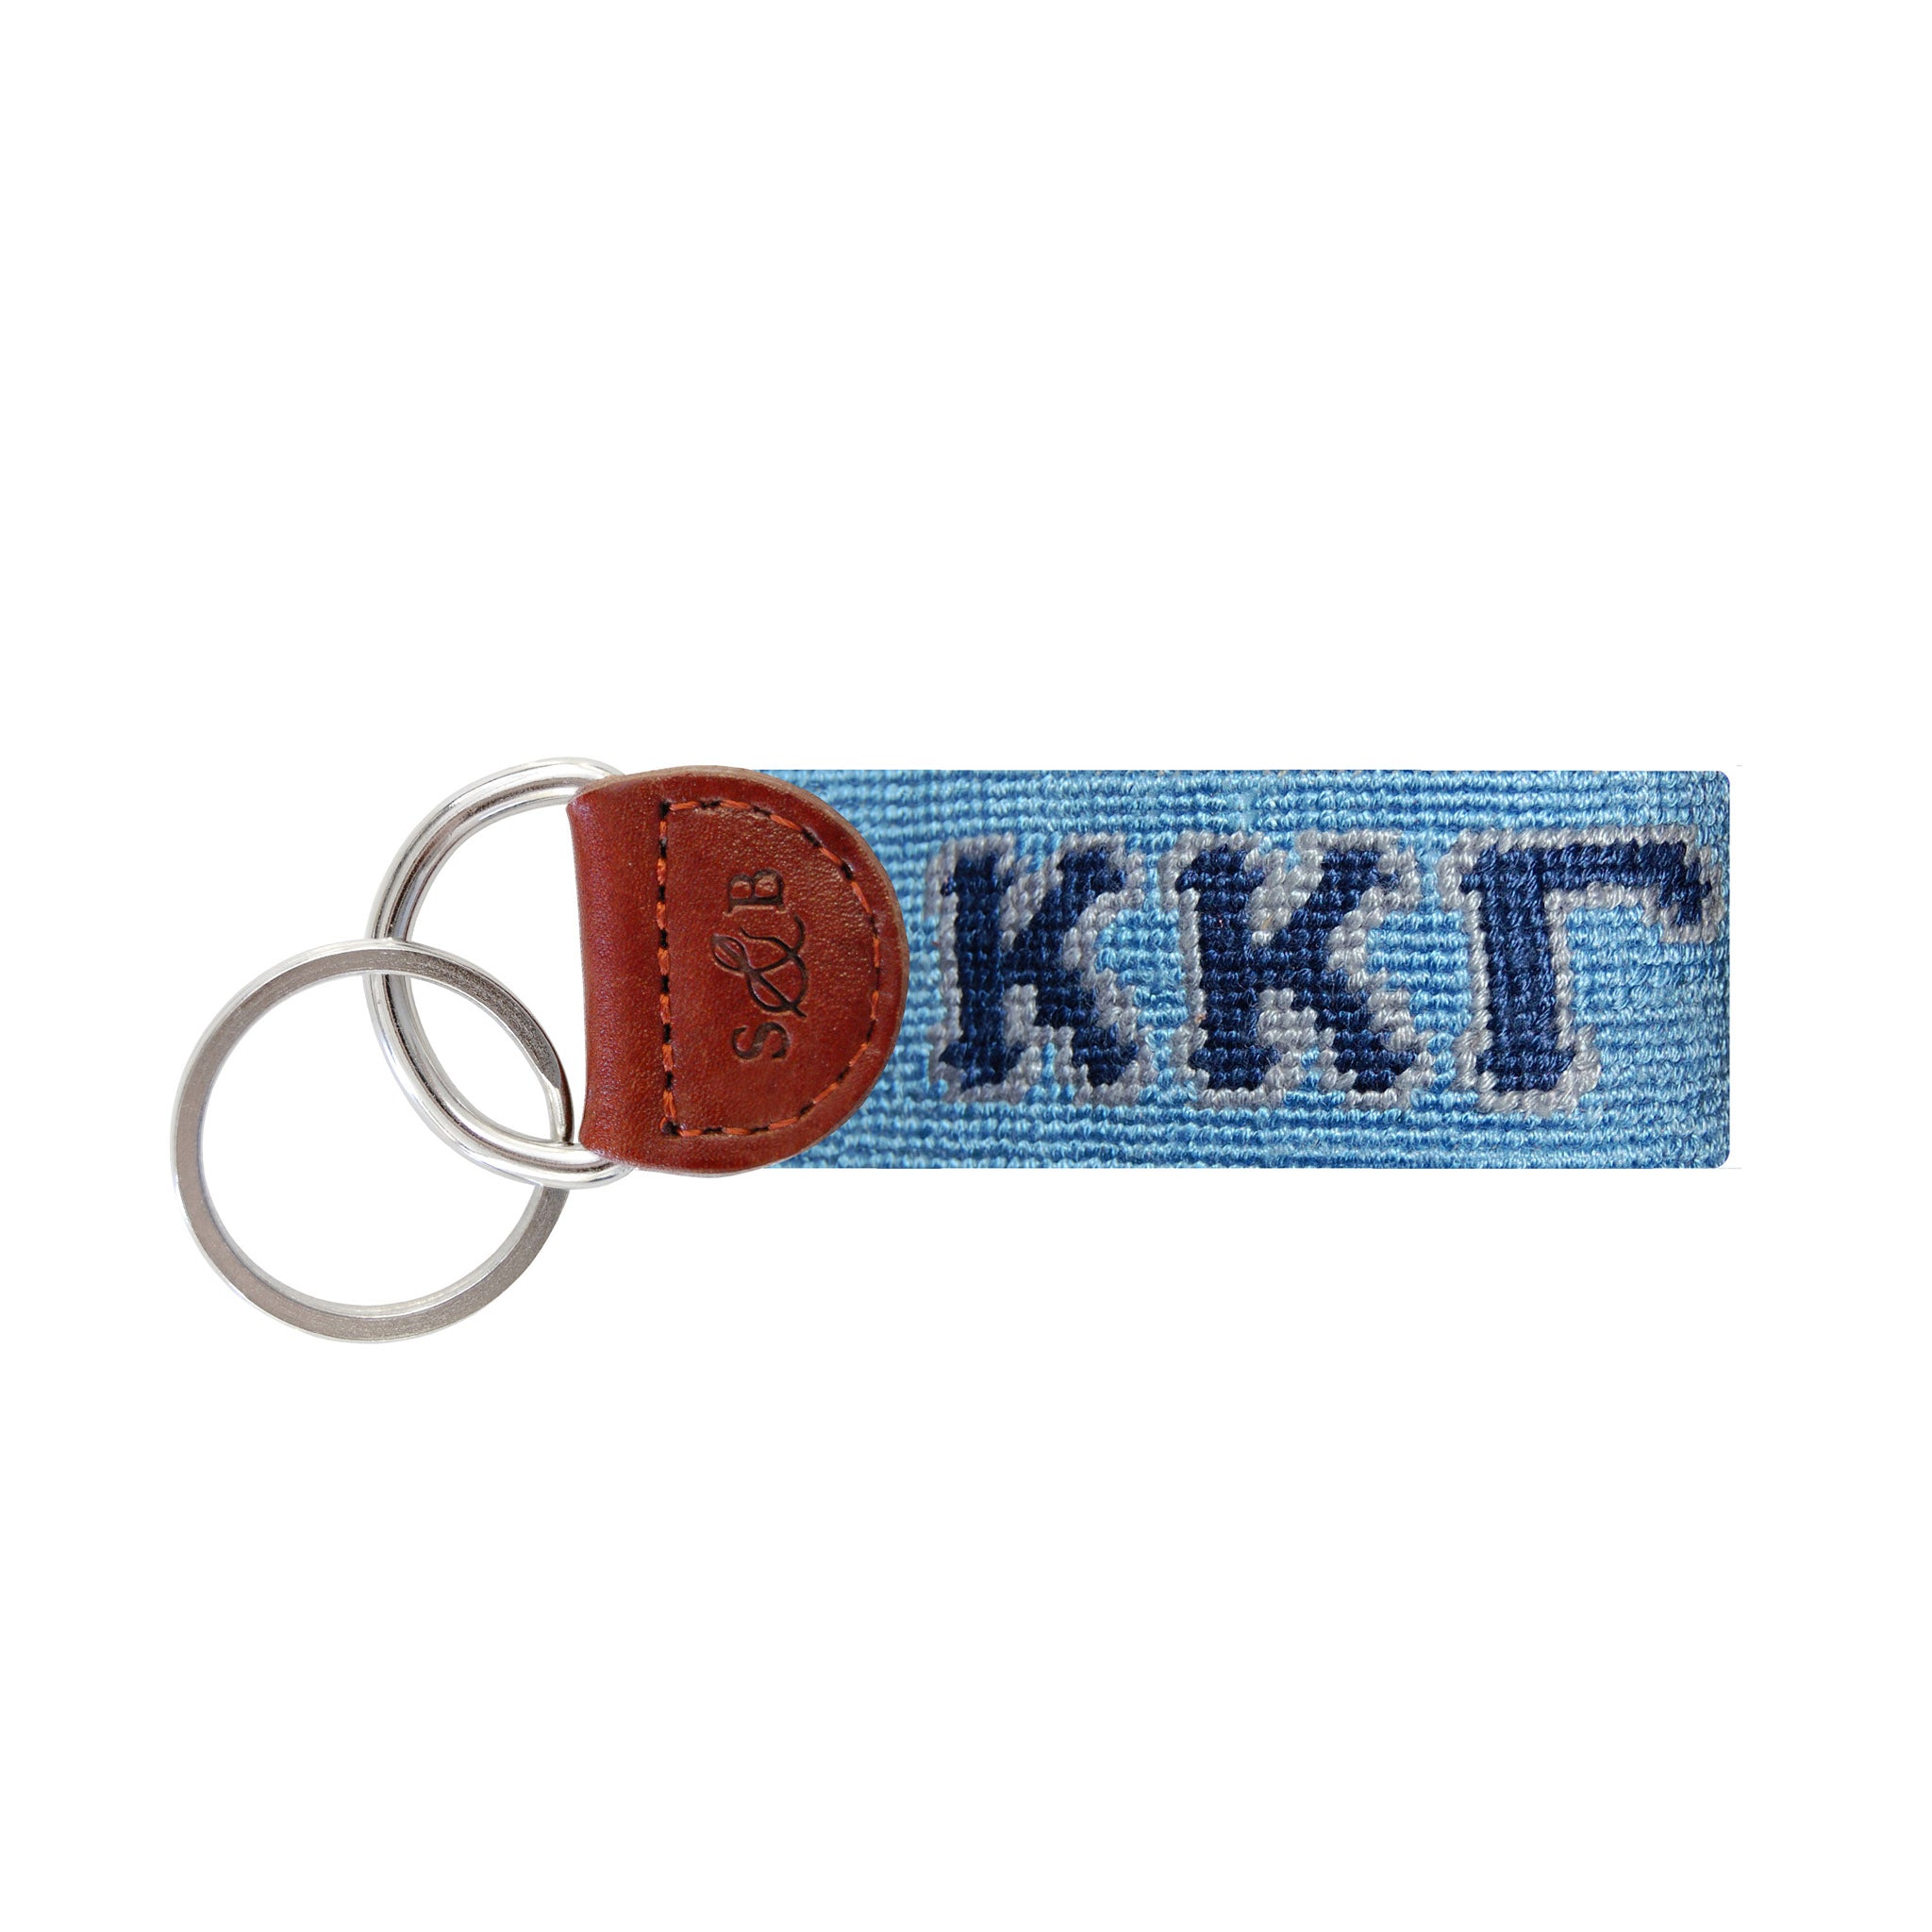 Kappa Kappa Gamma Key Fob